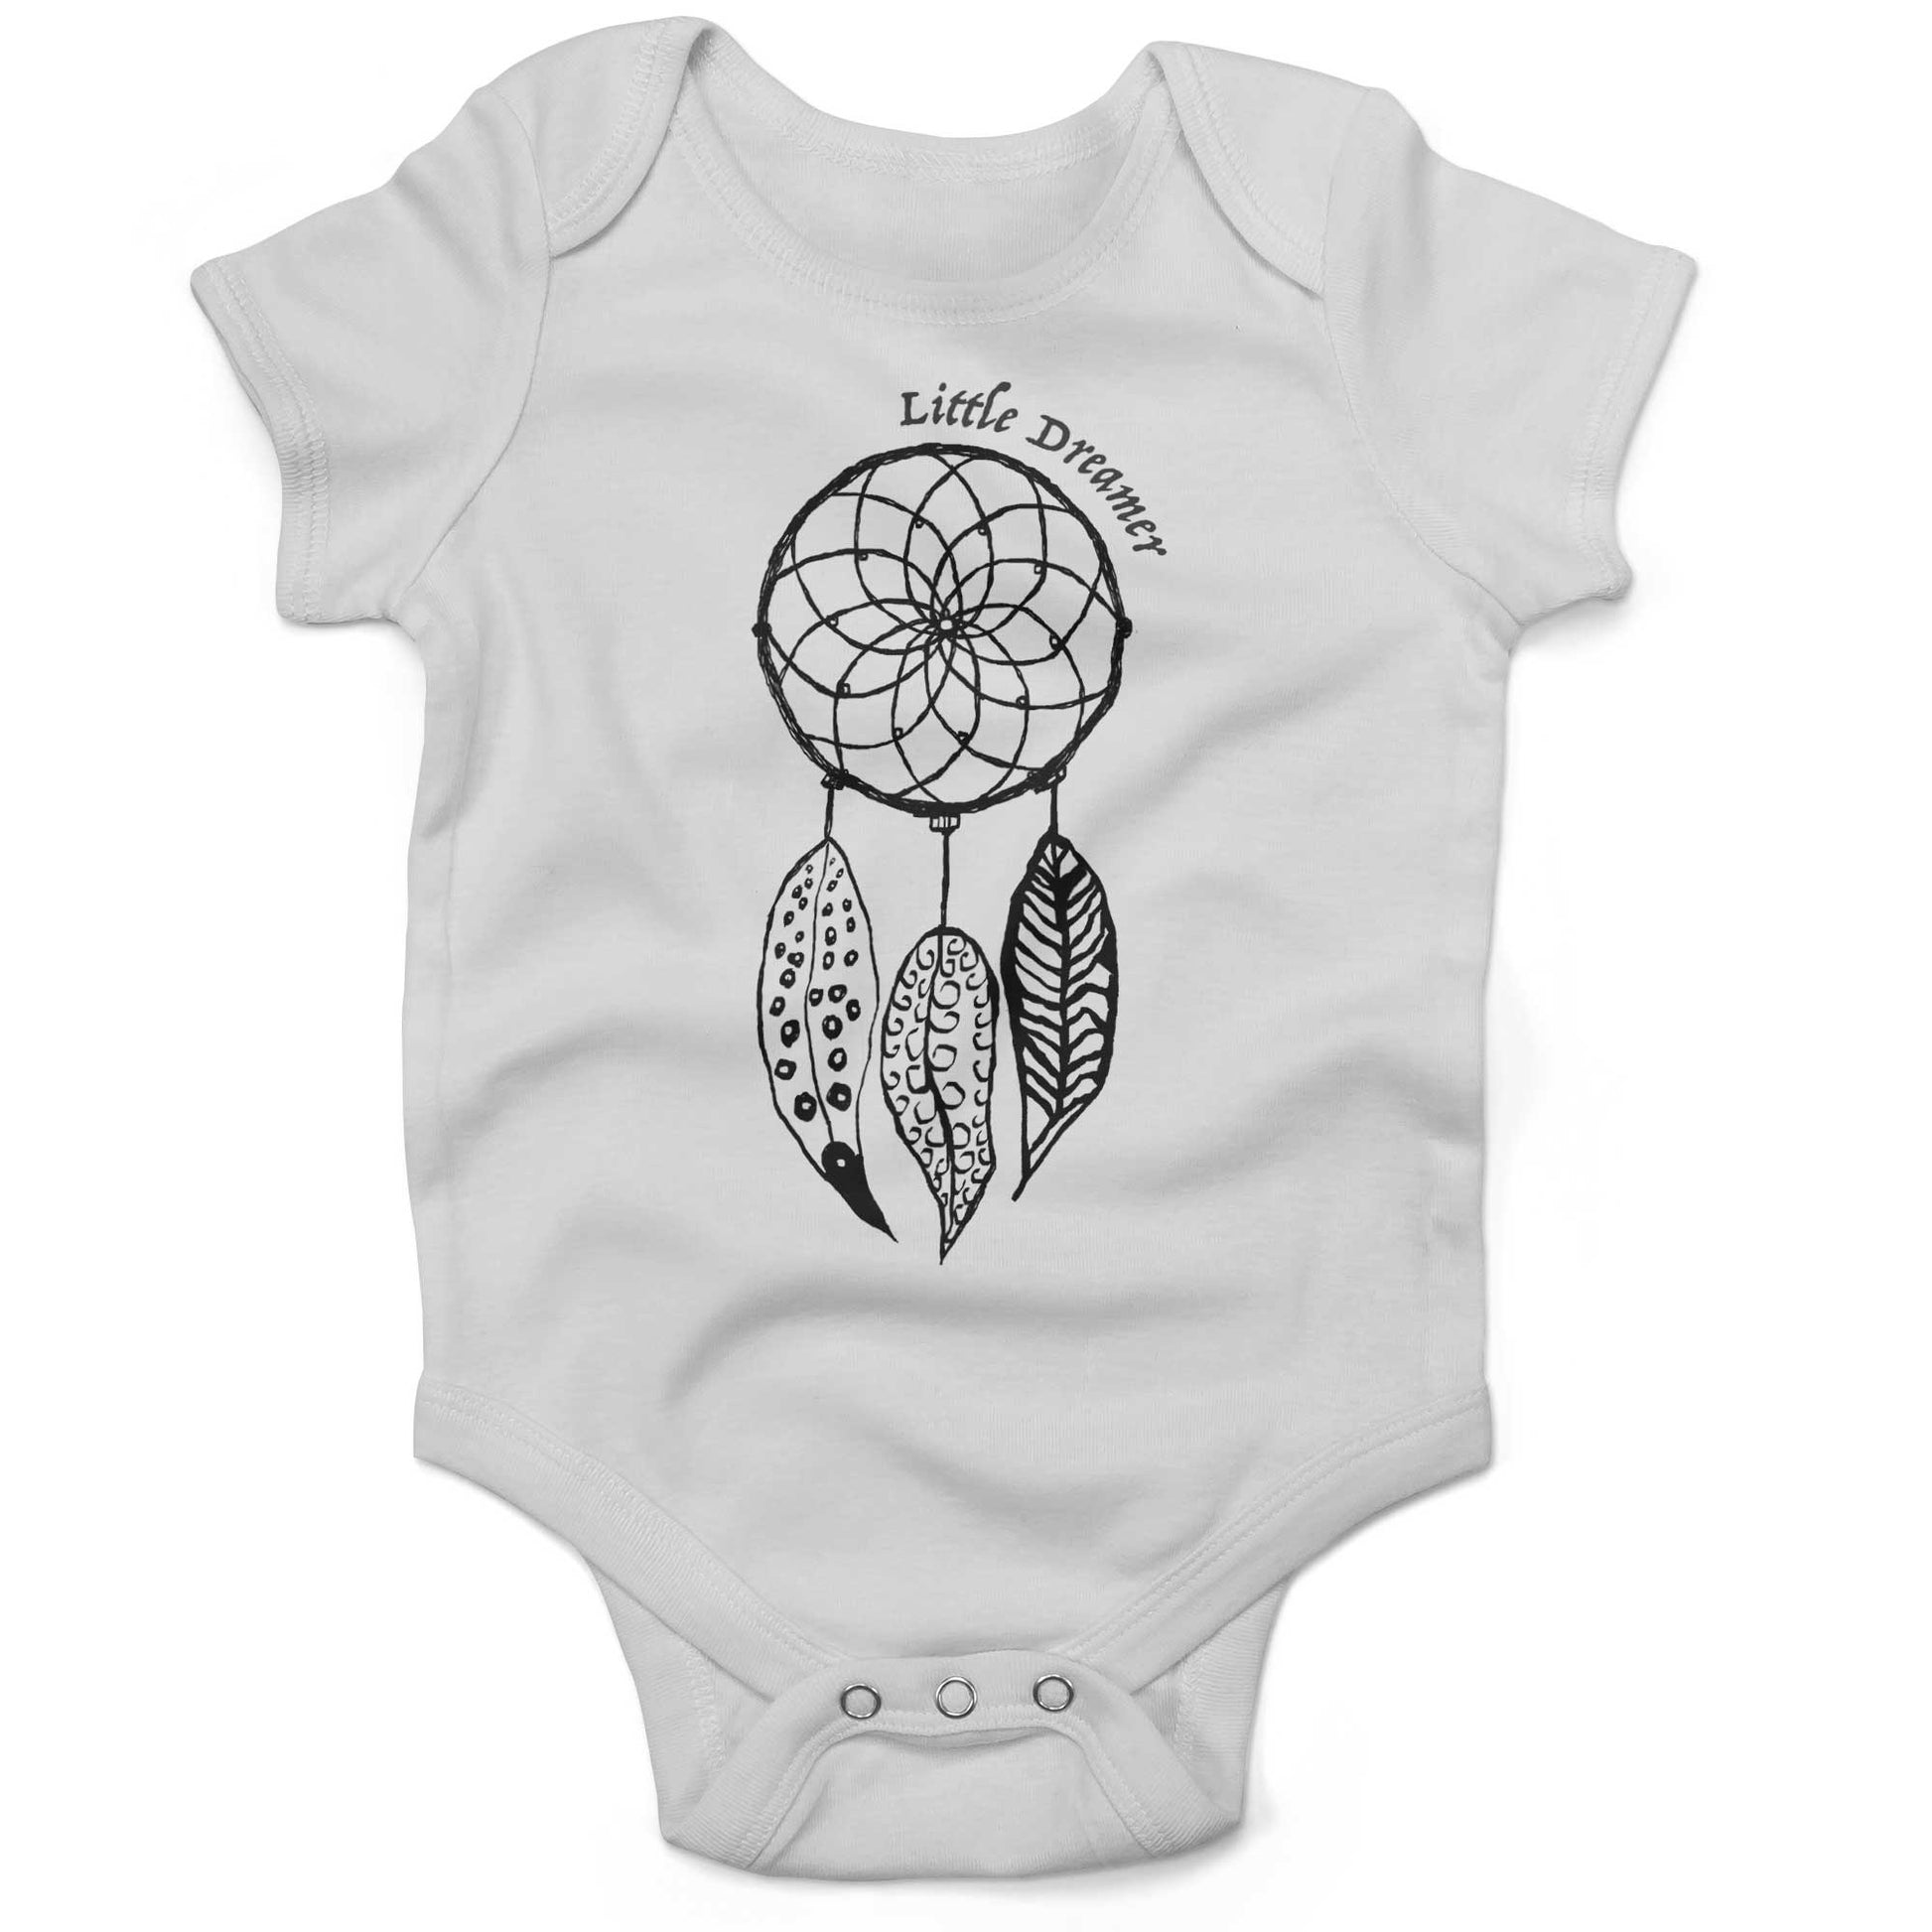 Dreamcatcher Infant Bodysuit or Raglan Baby Tee-White-3-6 months